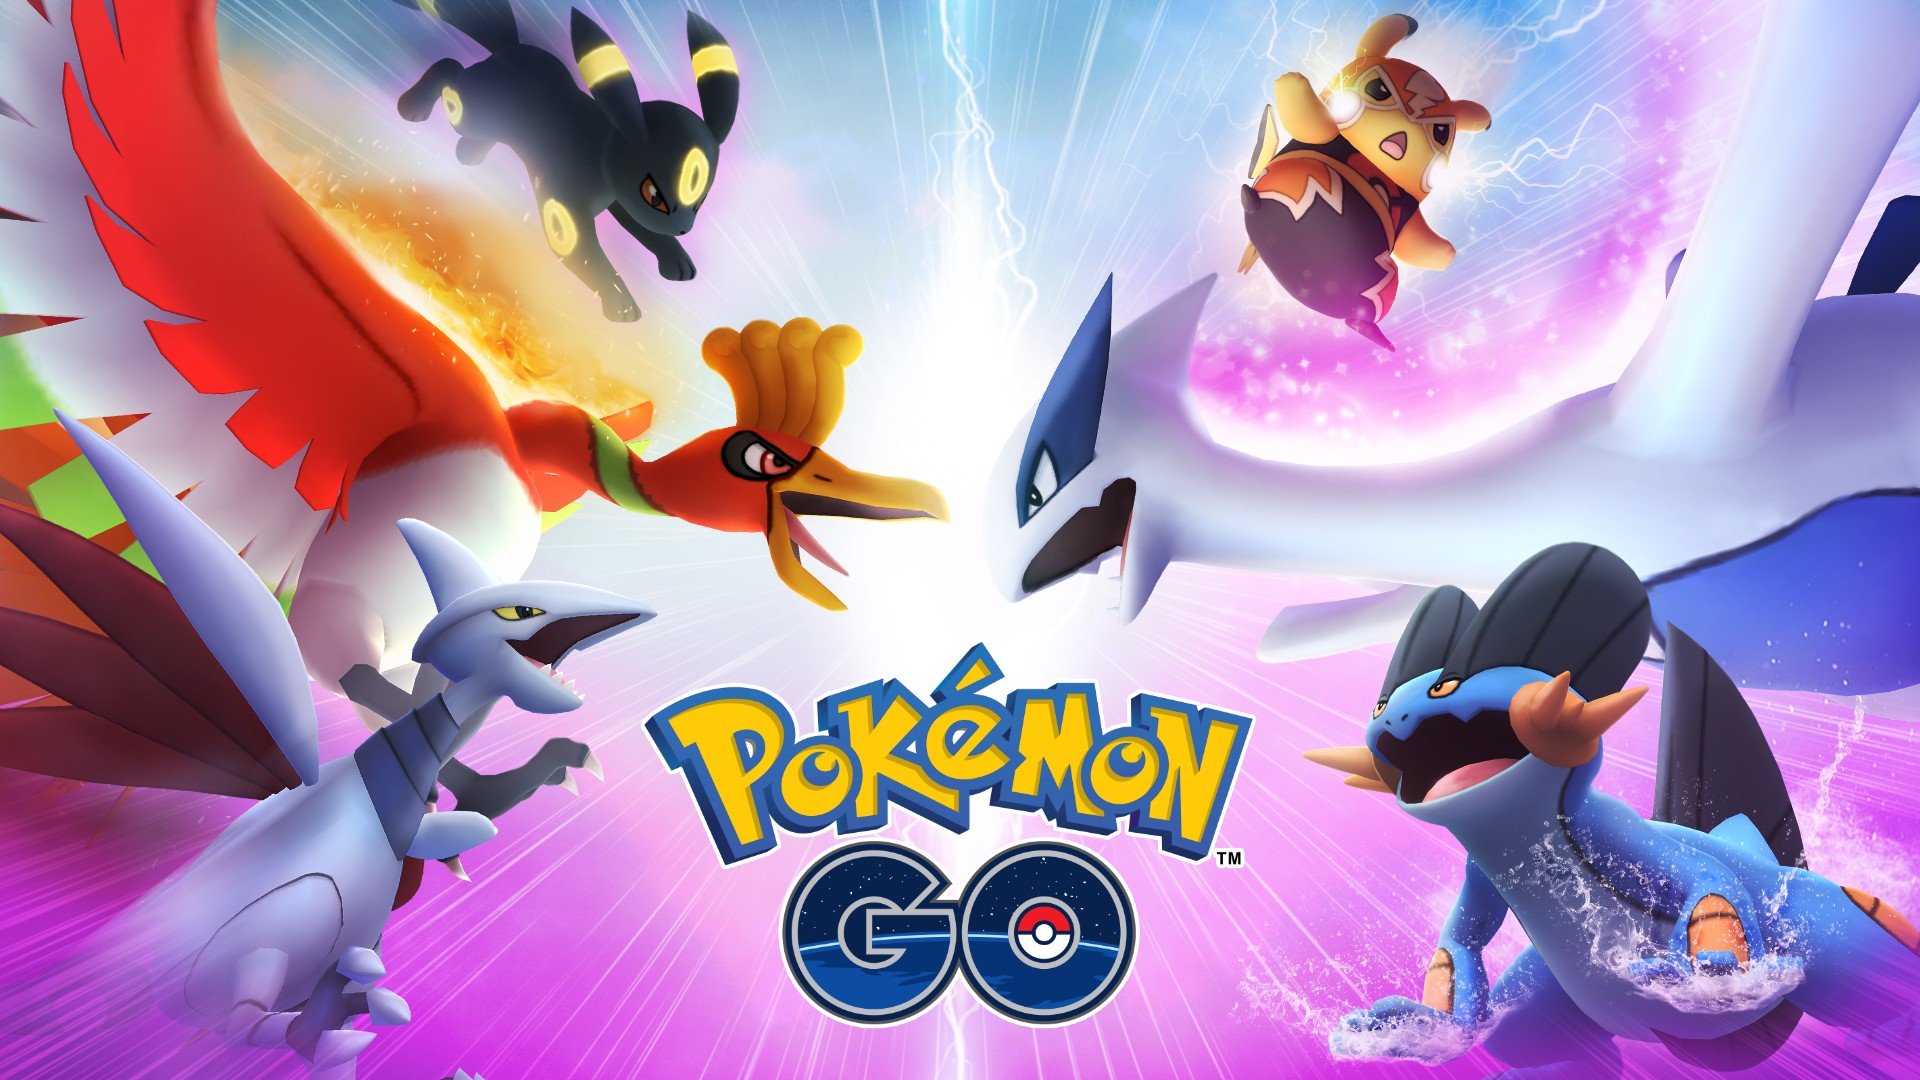 Pokémon UNITE: trailer da primeira campanha de aniversário, pokémon